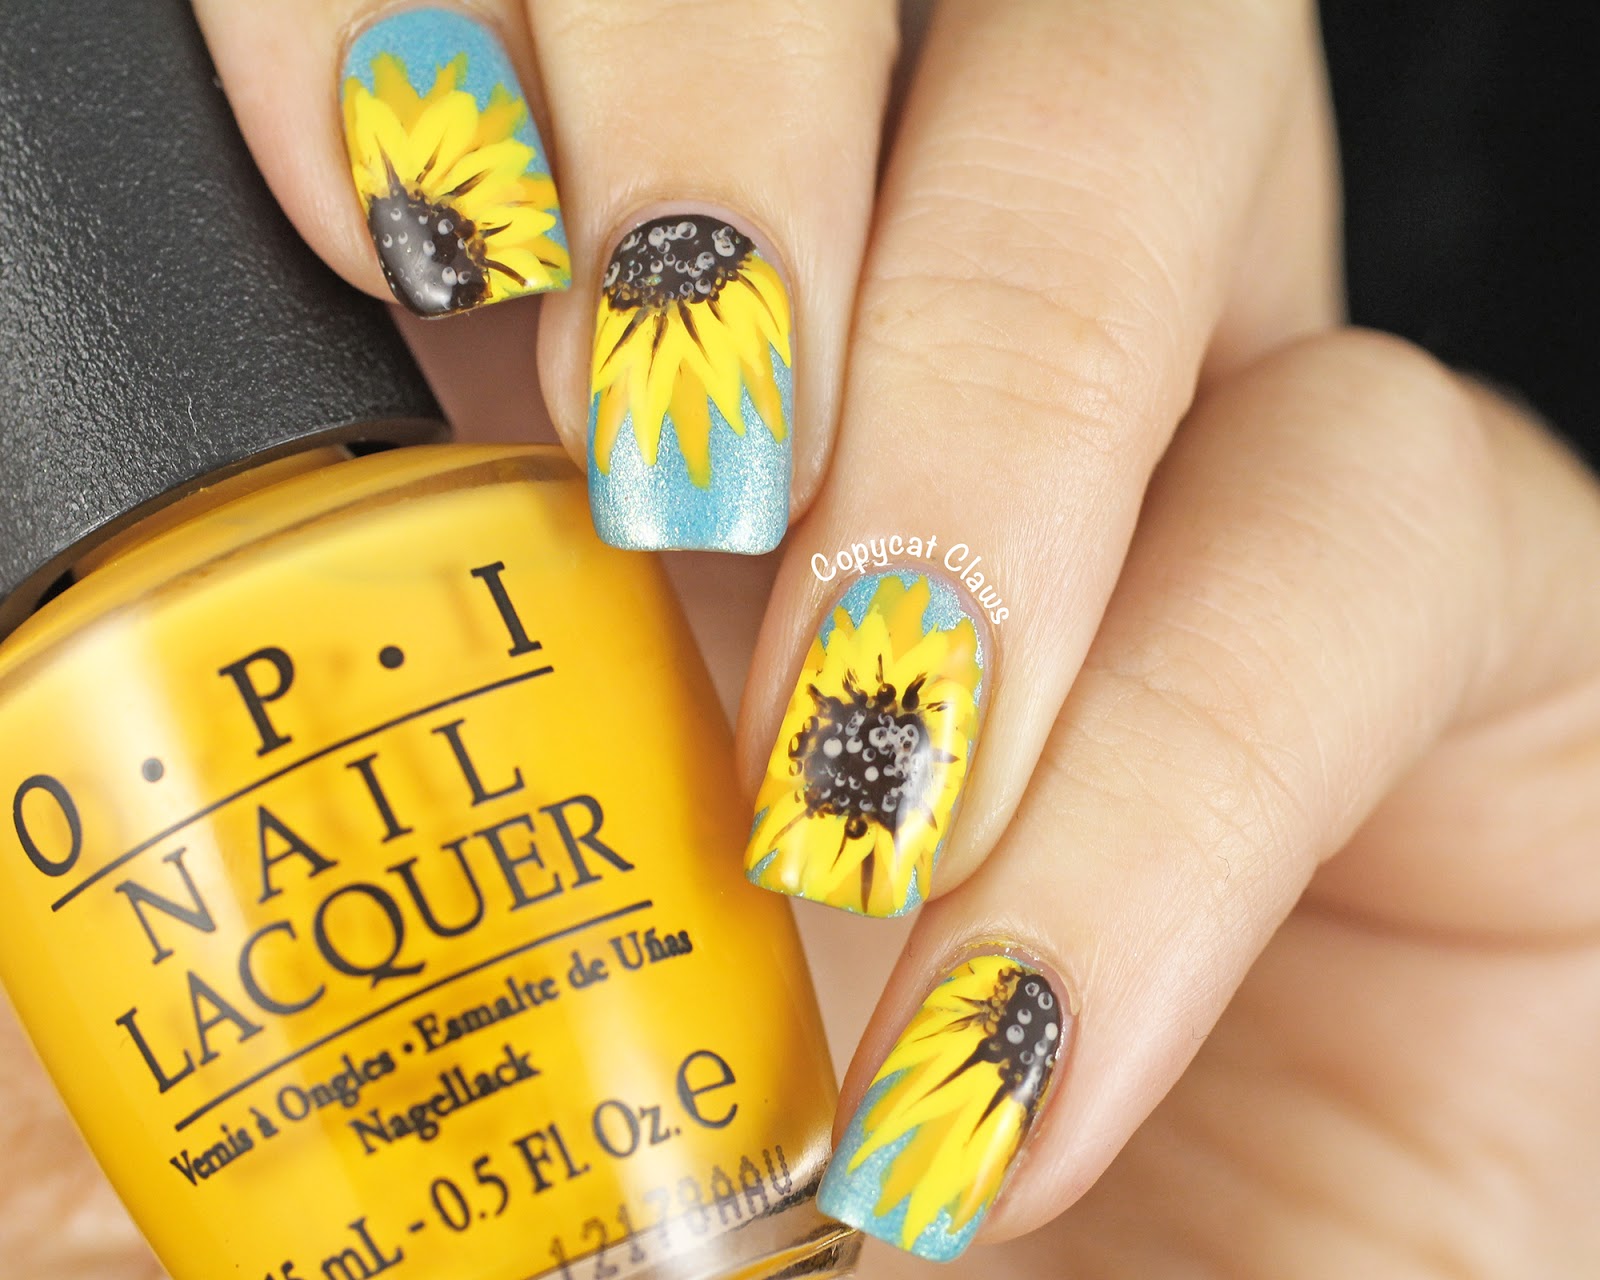 3. Sunflower Nail Art Ideas - wide 4